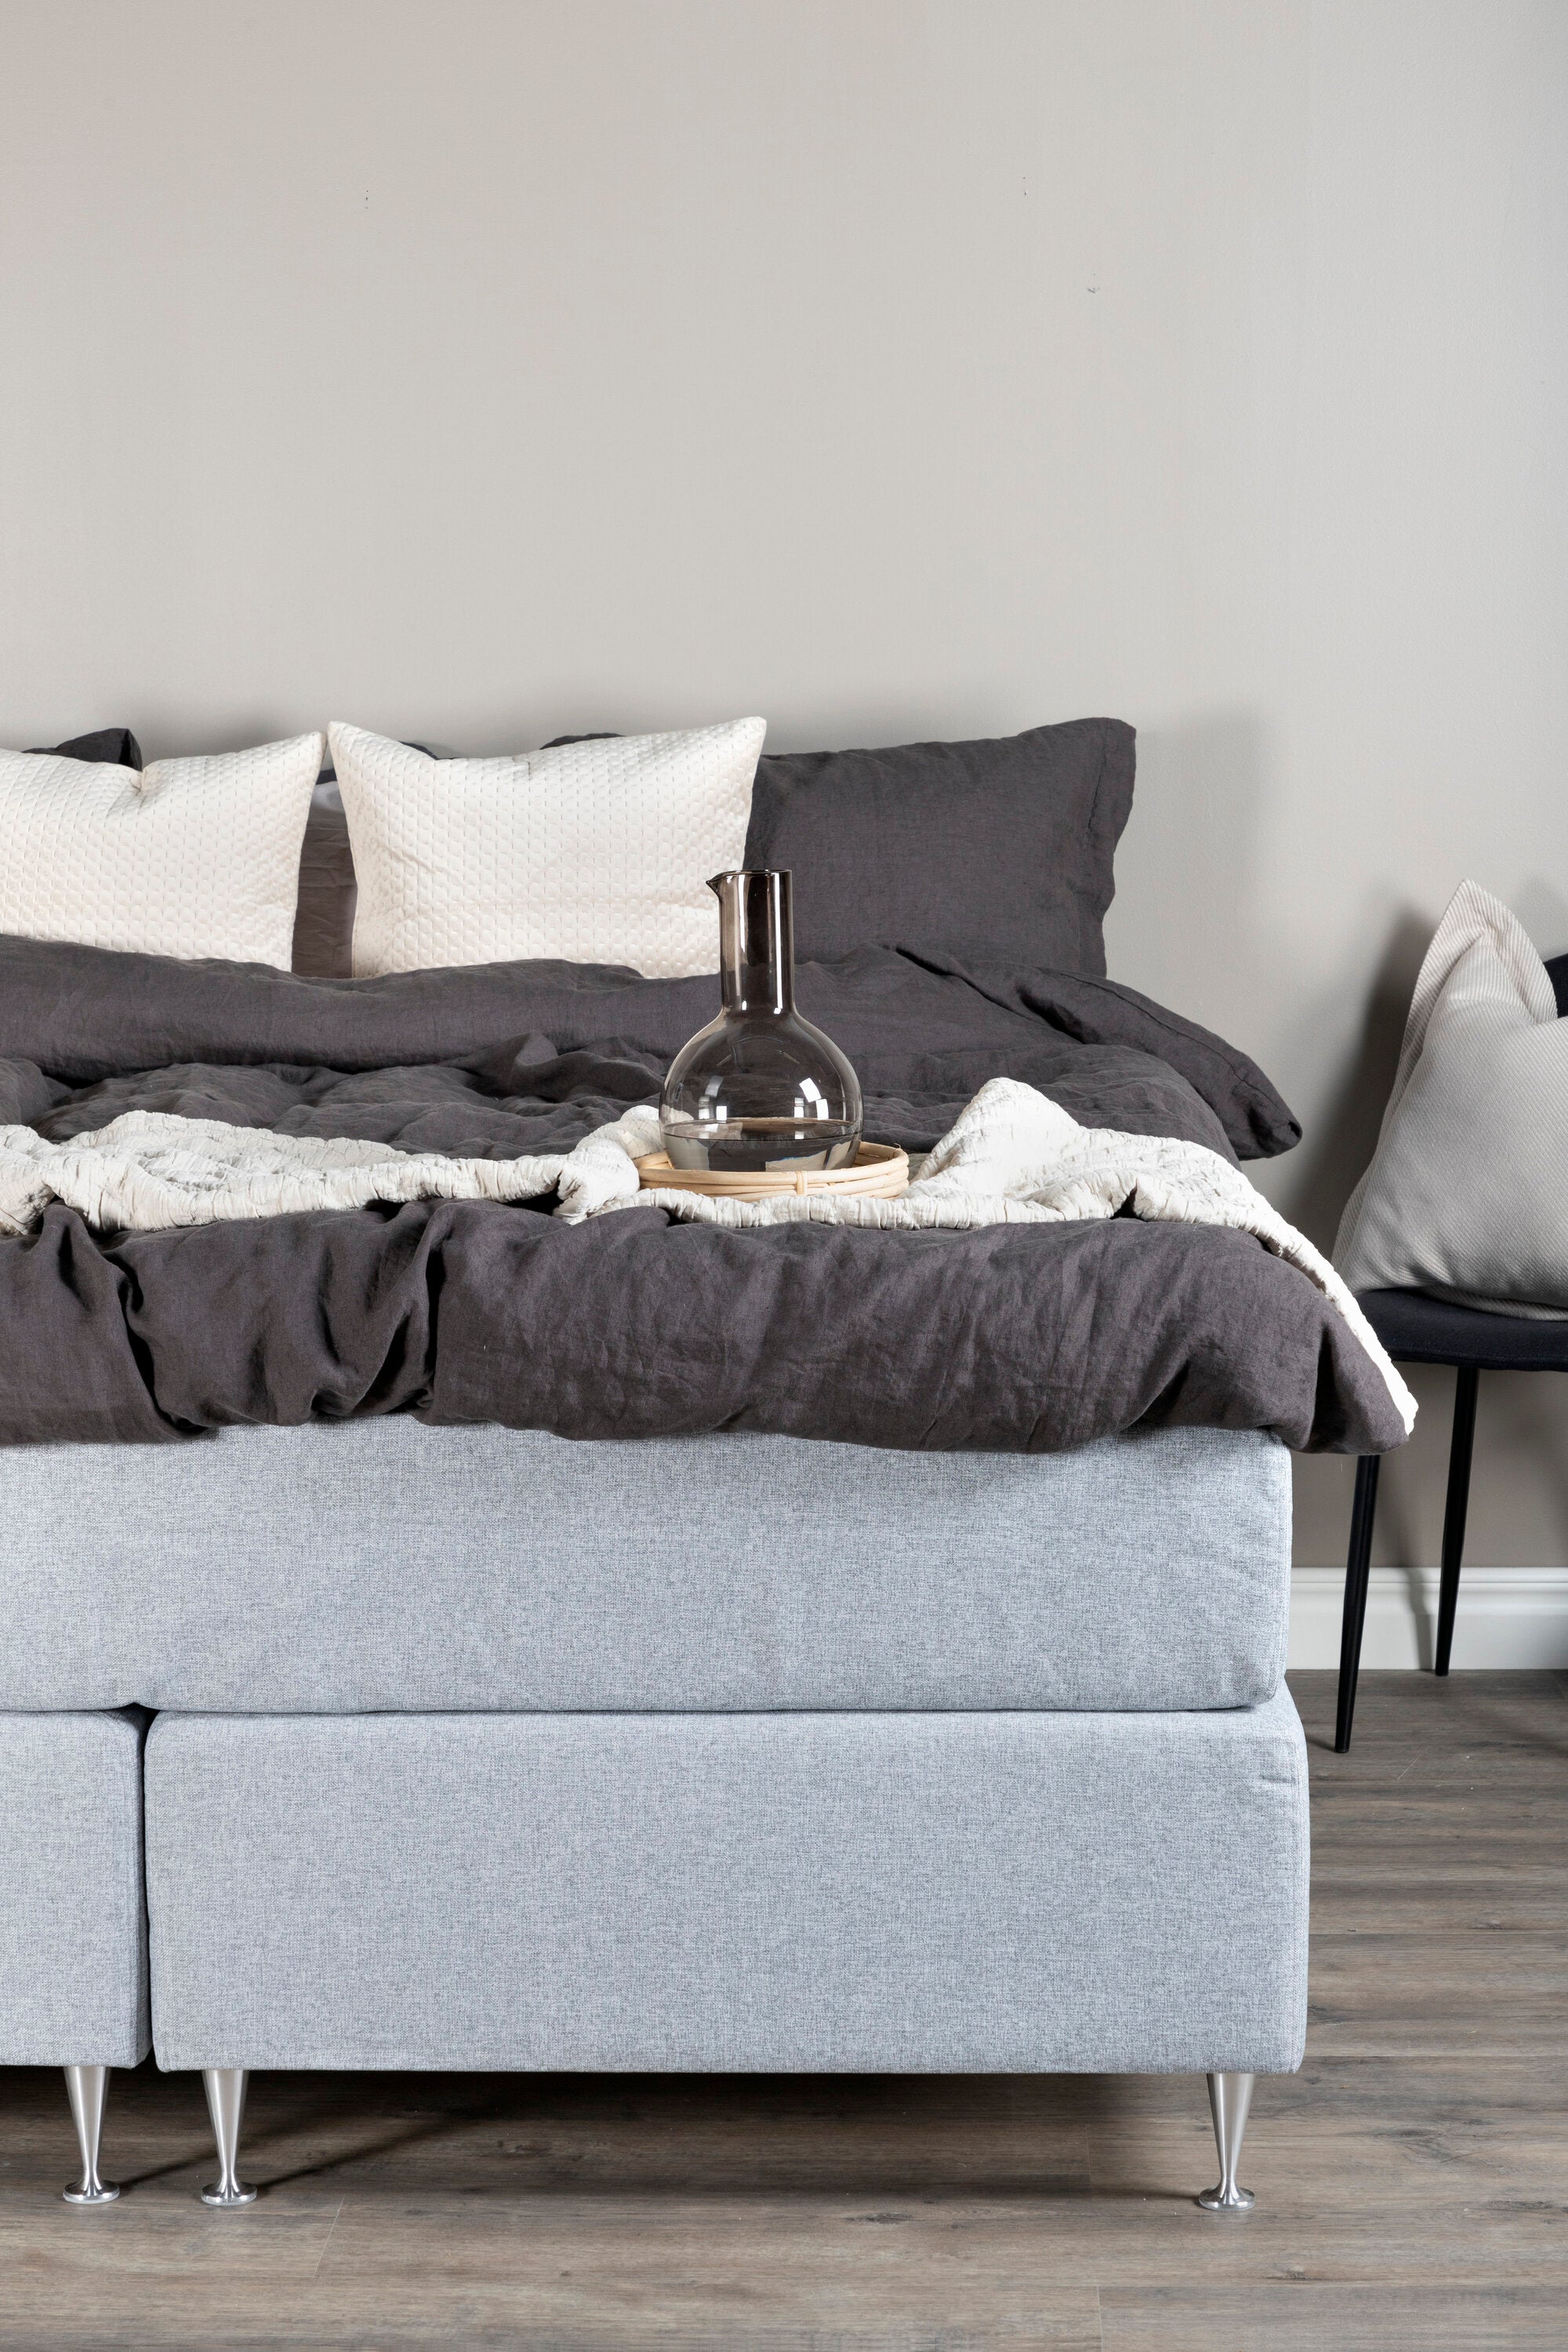 Älvdalen Bett in Grau präsentiert im Onlineshop von KAQTU Design AG. Bett ist von Venture Home